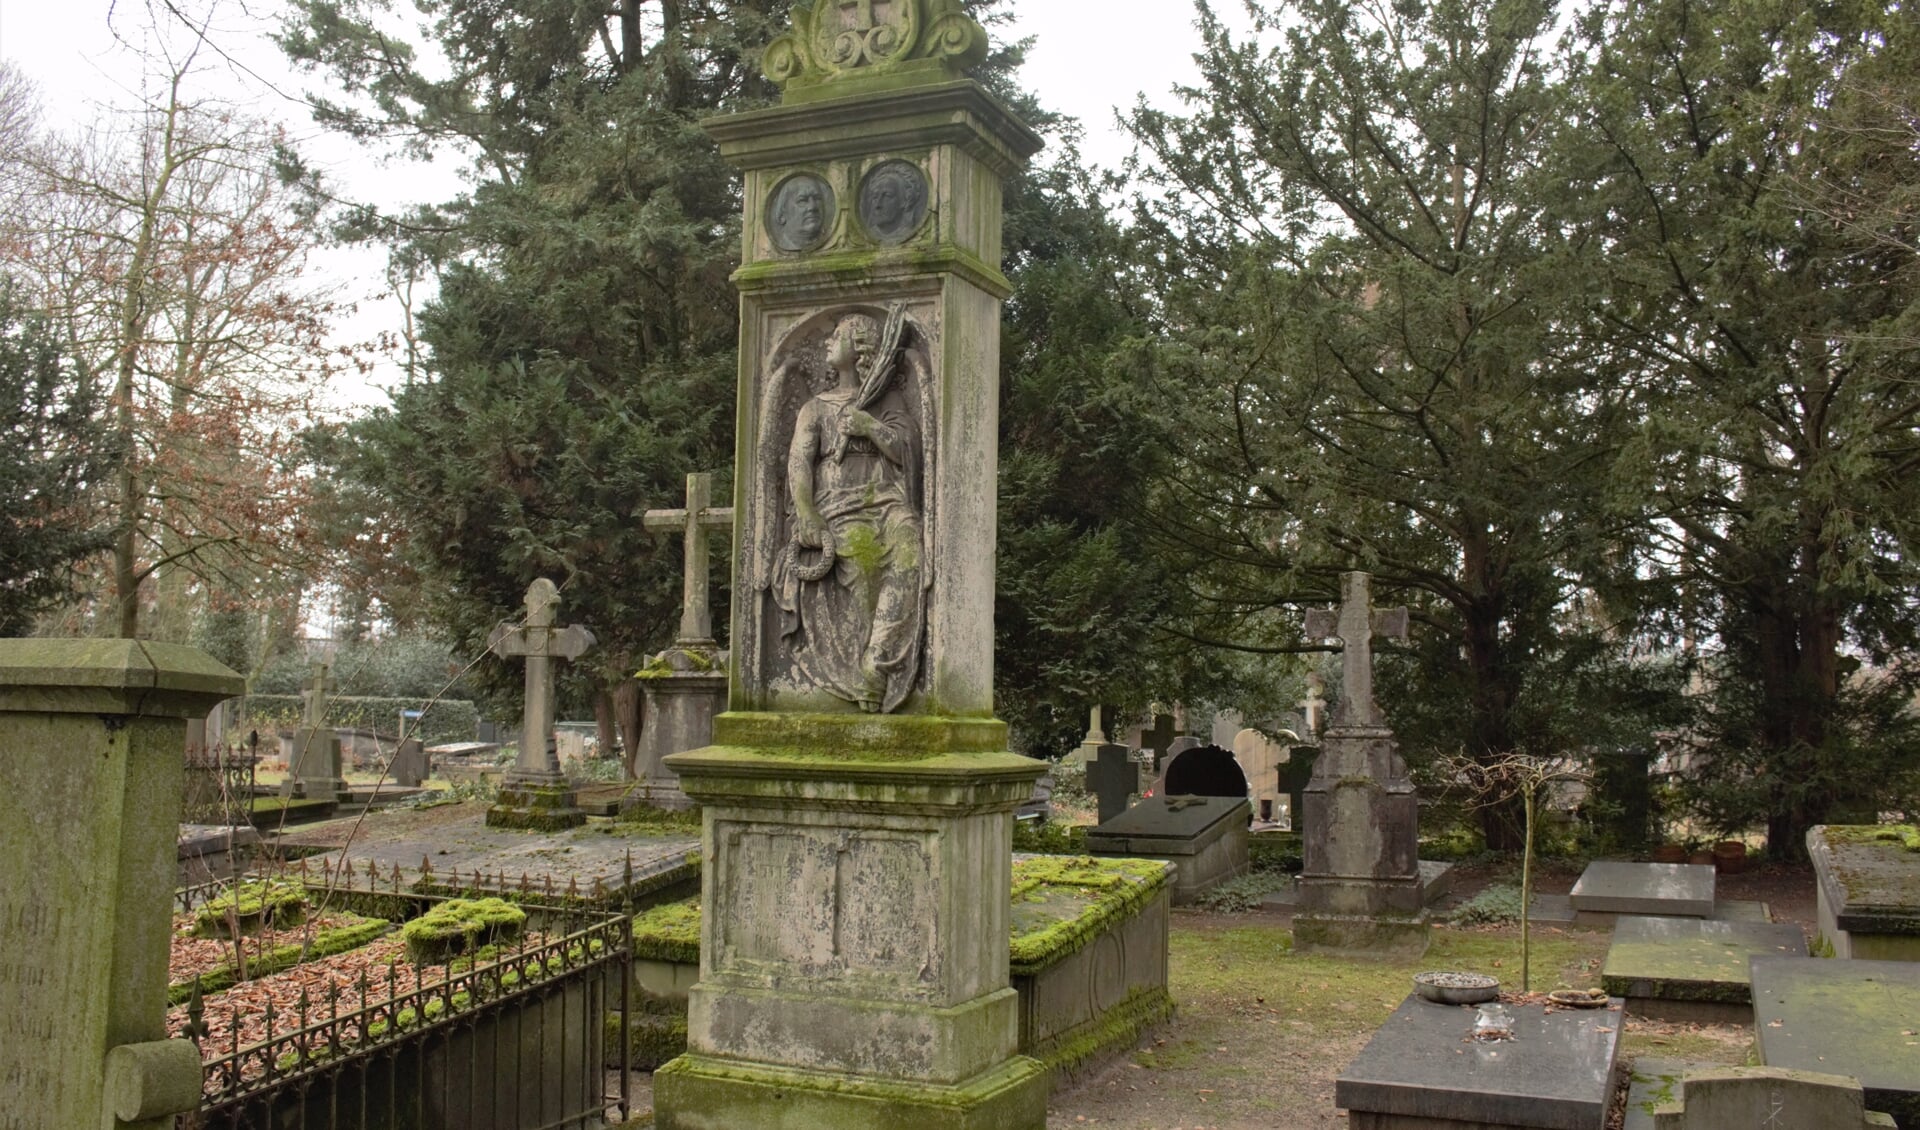 Het monumentale graf van Christoffel Lutkie en zijn vrouw. Lutkie had samen met Christiaan Cranenburg een boekhandel en drukkerij.